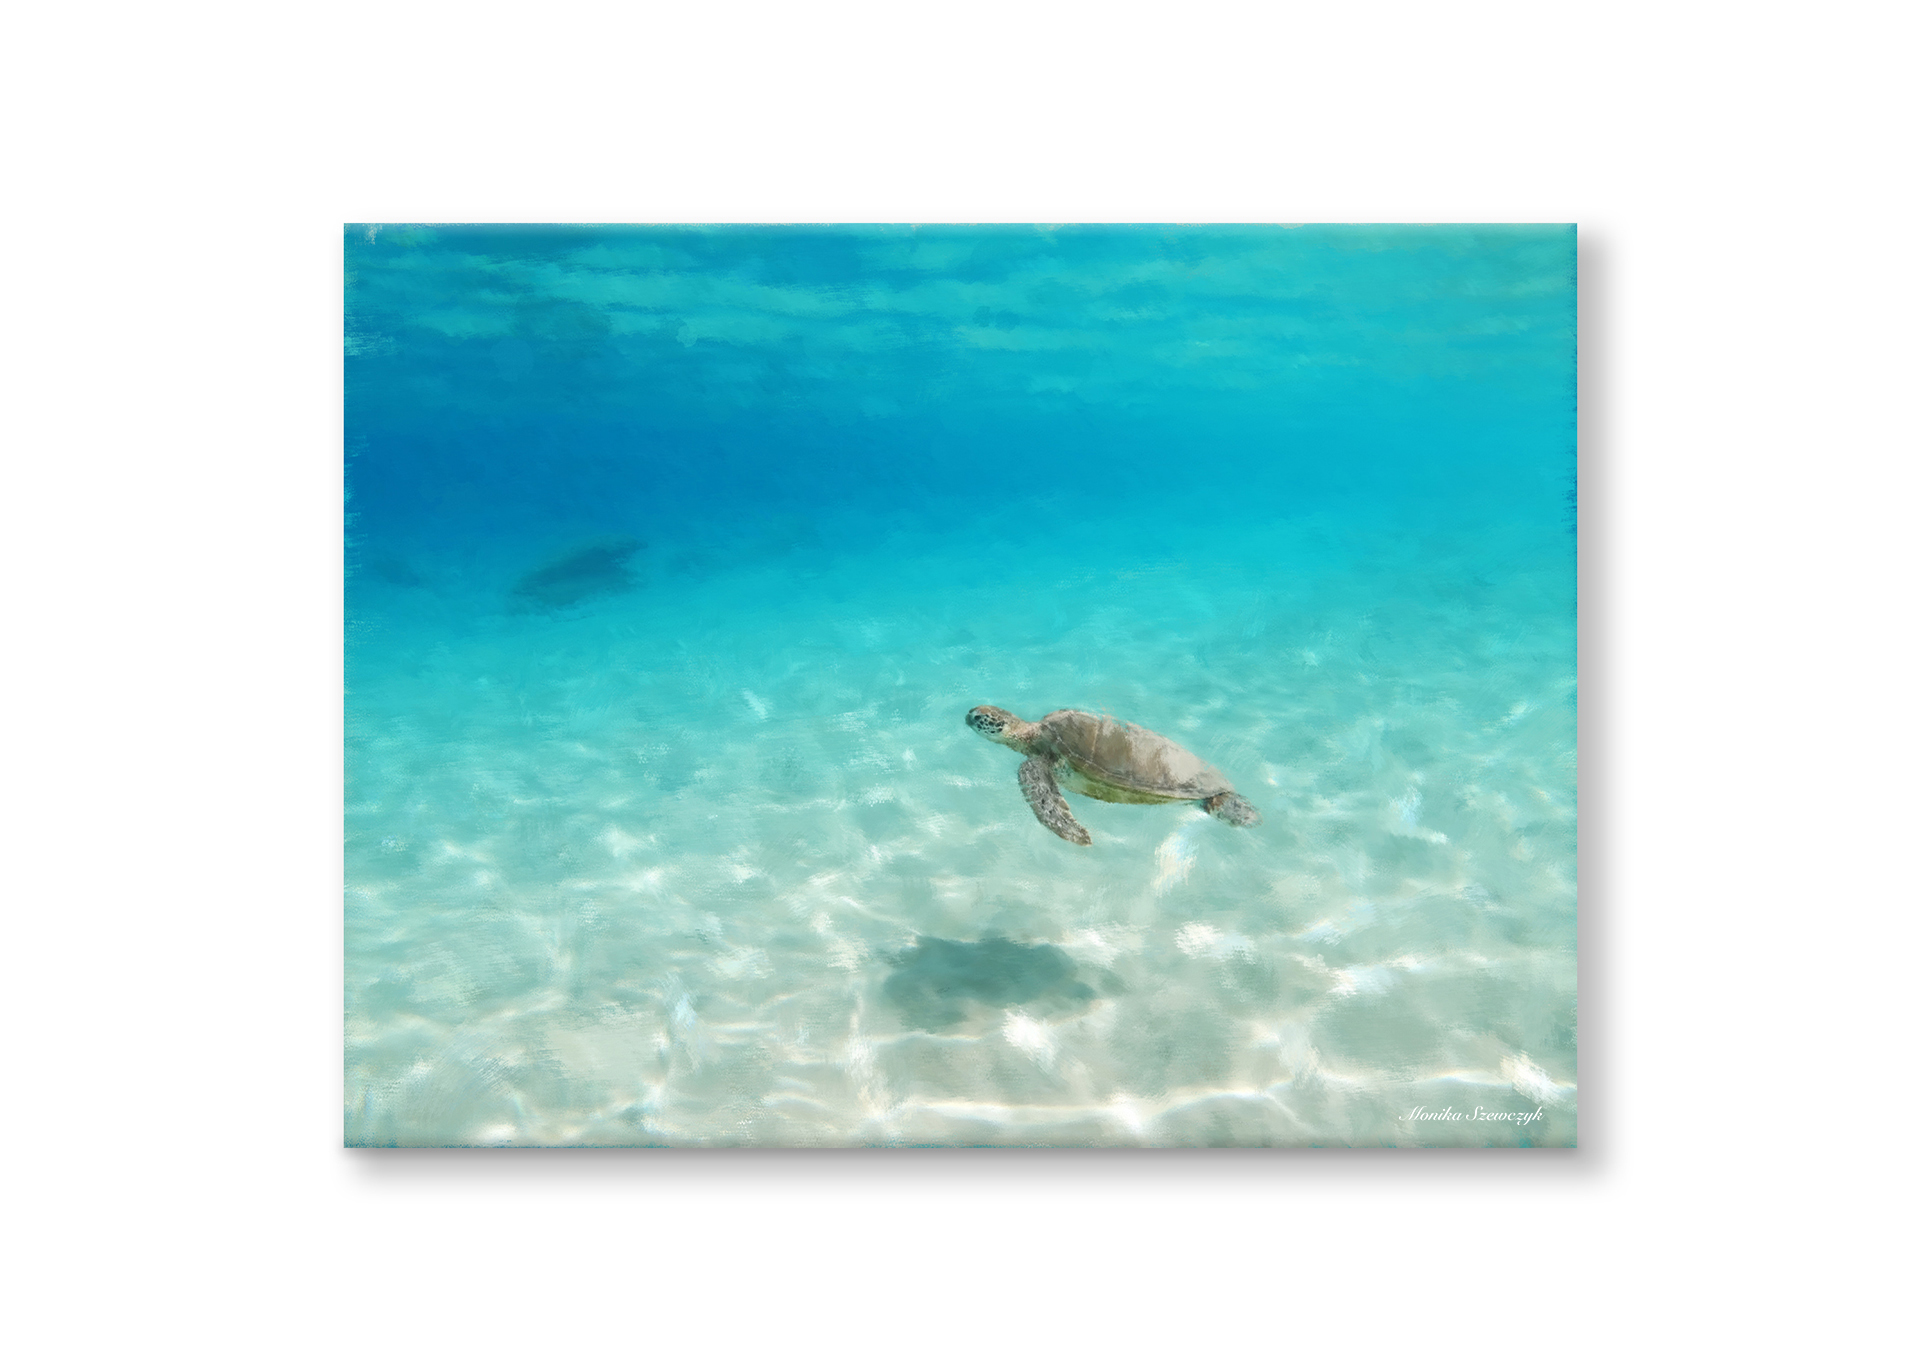 Sea Turtle, Barbados 2020